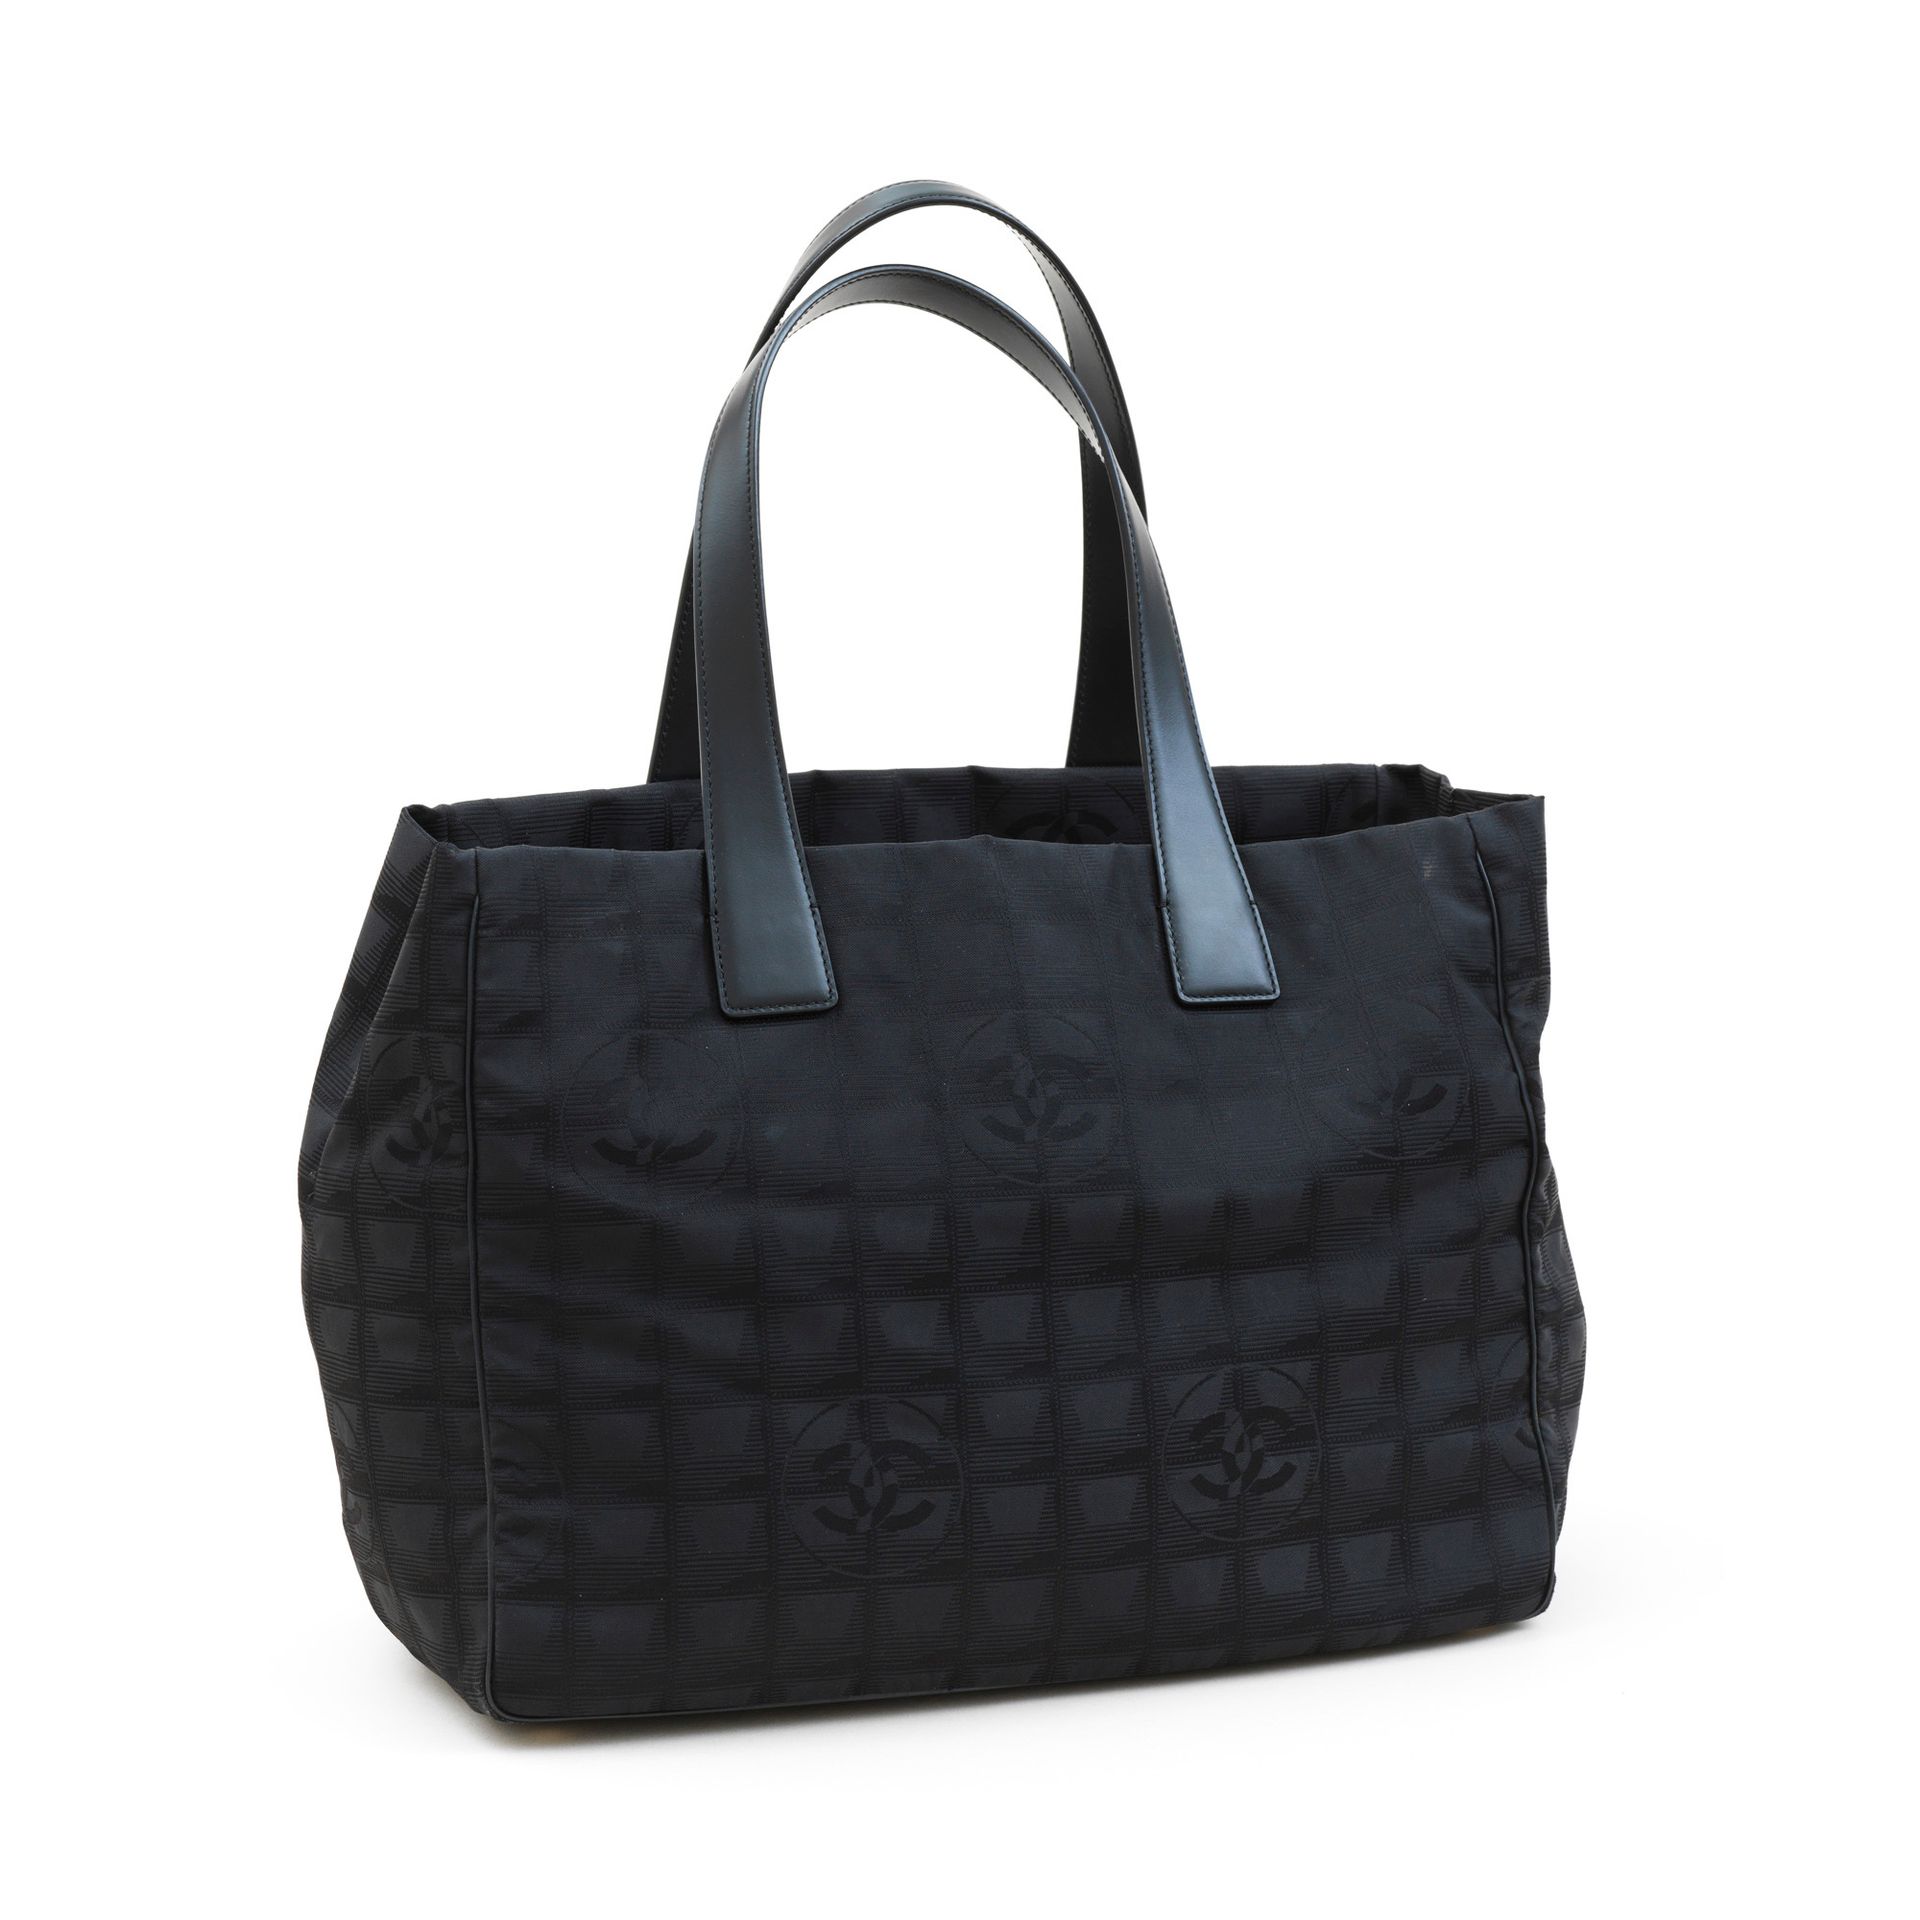 Chanel 香奈儿 - 黑色大马士革尼龙购物袋，有绗缝和品牌标志 - 黑色尼龙内侧有两个拉链袋 - 黑色皮革双手柄 - 有认证号 - 尺寸：34x26x14.&hellip;